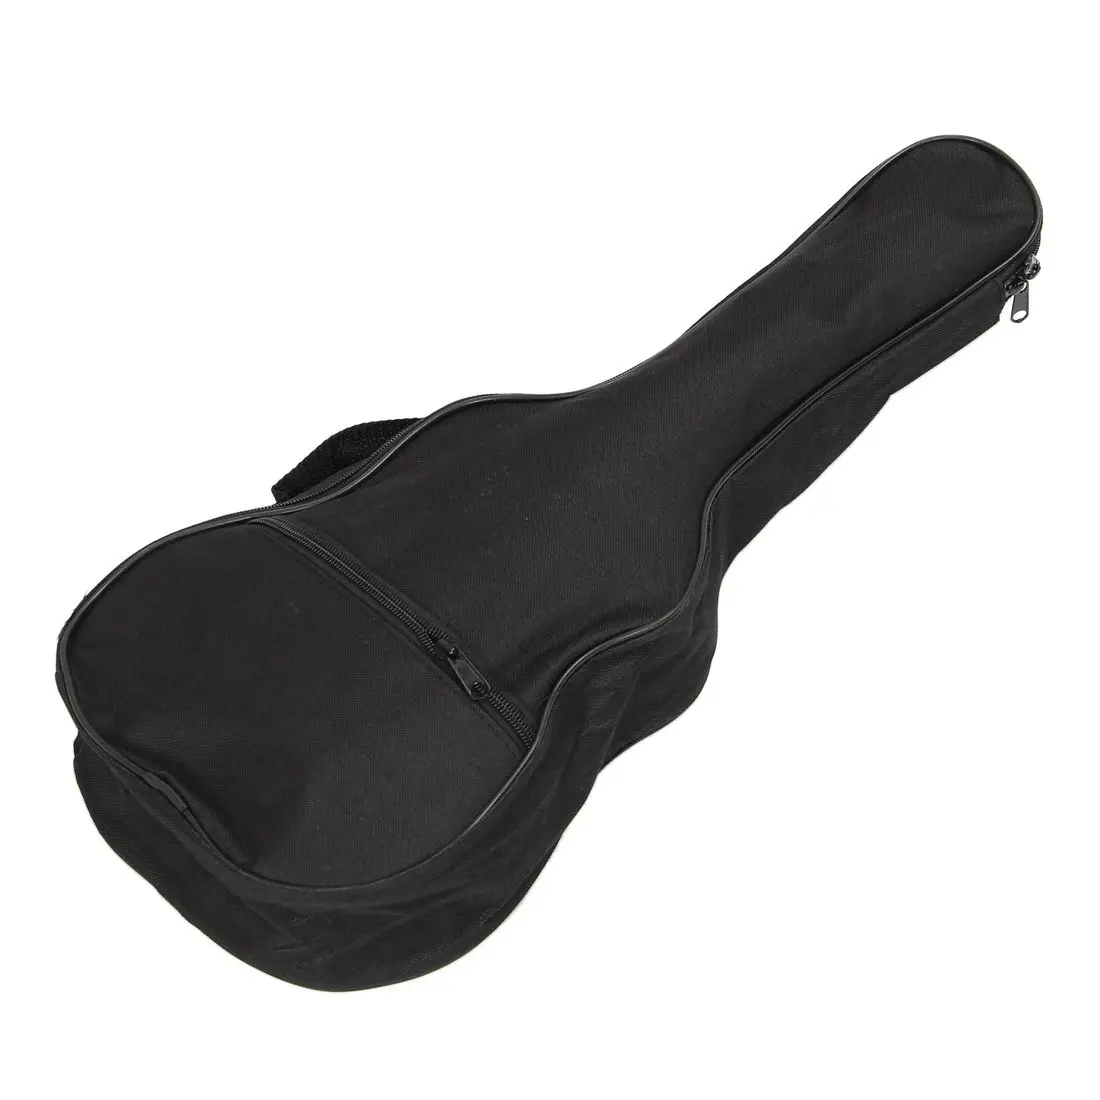 Шьет подробные сведения о миниатюрная гитара укулеле мягкий удобный плечевой Back Carry чехол сумка с черного цвета с ремешками для подарка